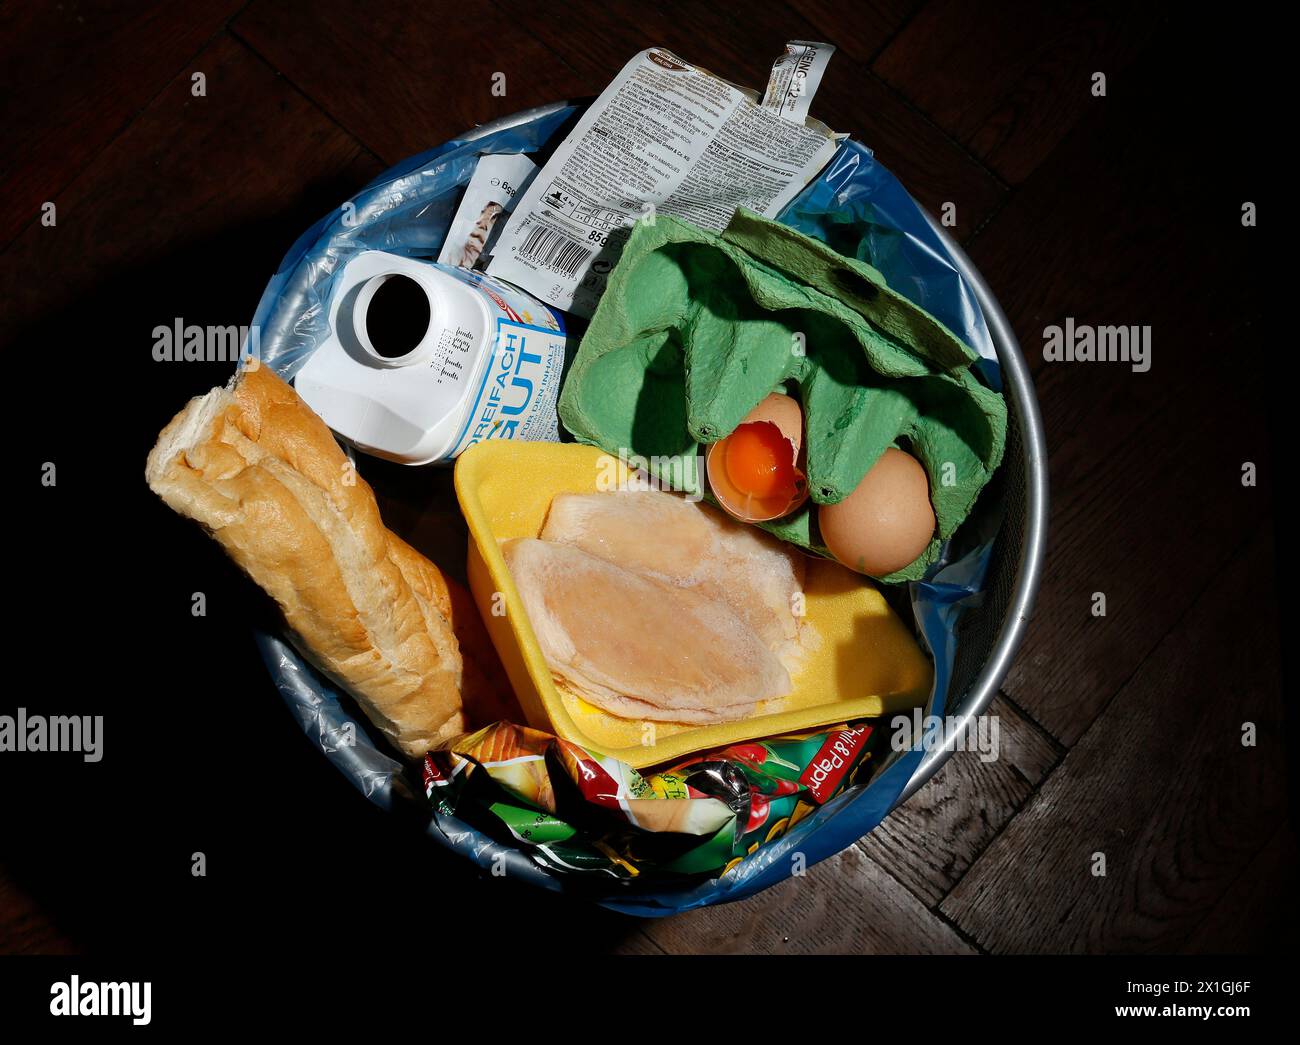 Caratteristica - i rifiuti alimentari o la perdita di cibo sono alimenti che vengono gettati o persi non mangiati. IMMAGINE: Uova, bottiglia di latte, pane in una spazzatura può il 14 novembre 2012. - 20121113 PD5402 - Rechteinfo: Diritti gestiti (RM) Foto Stock